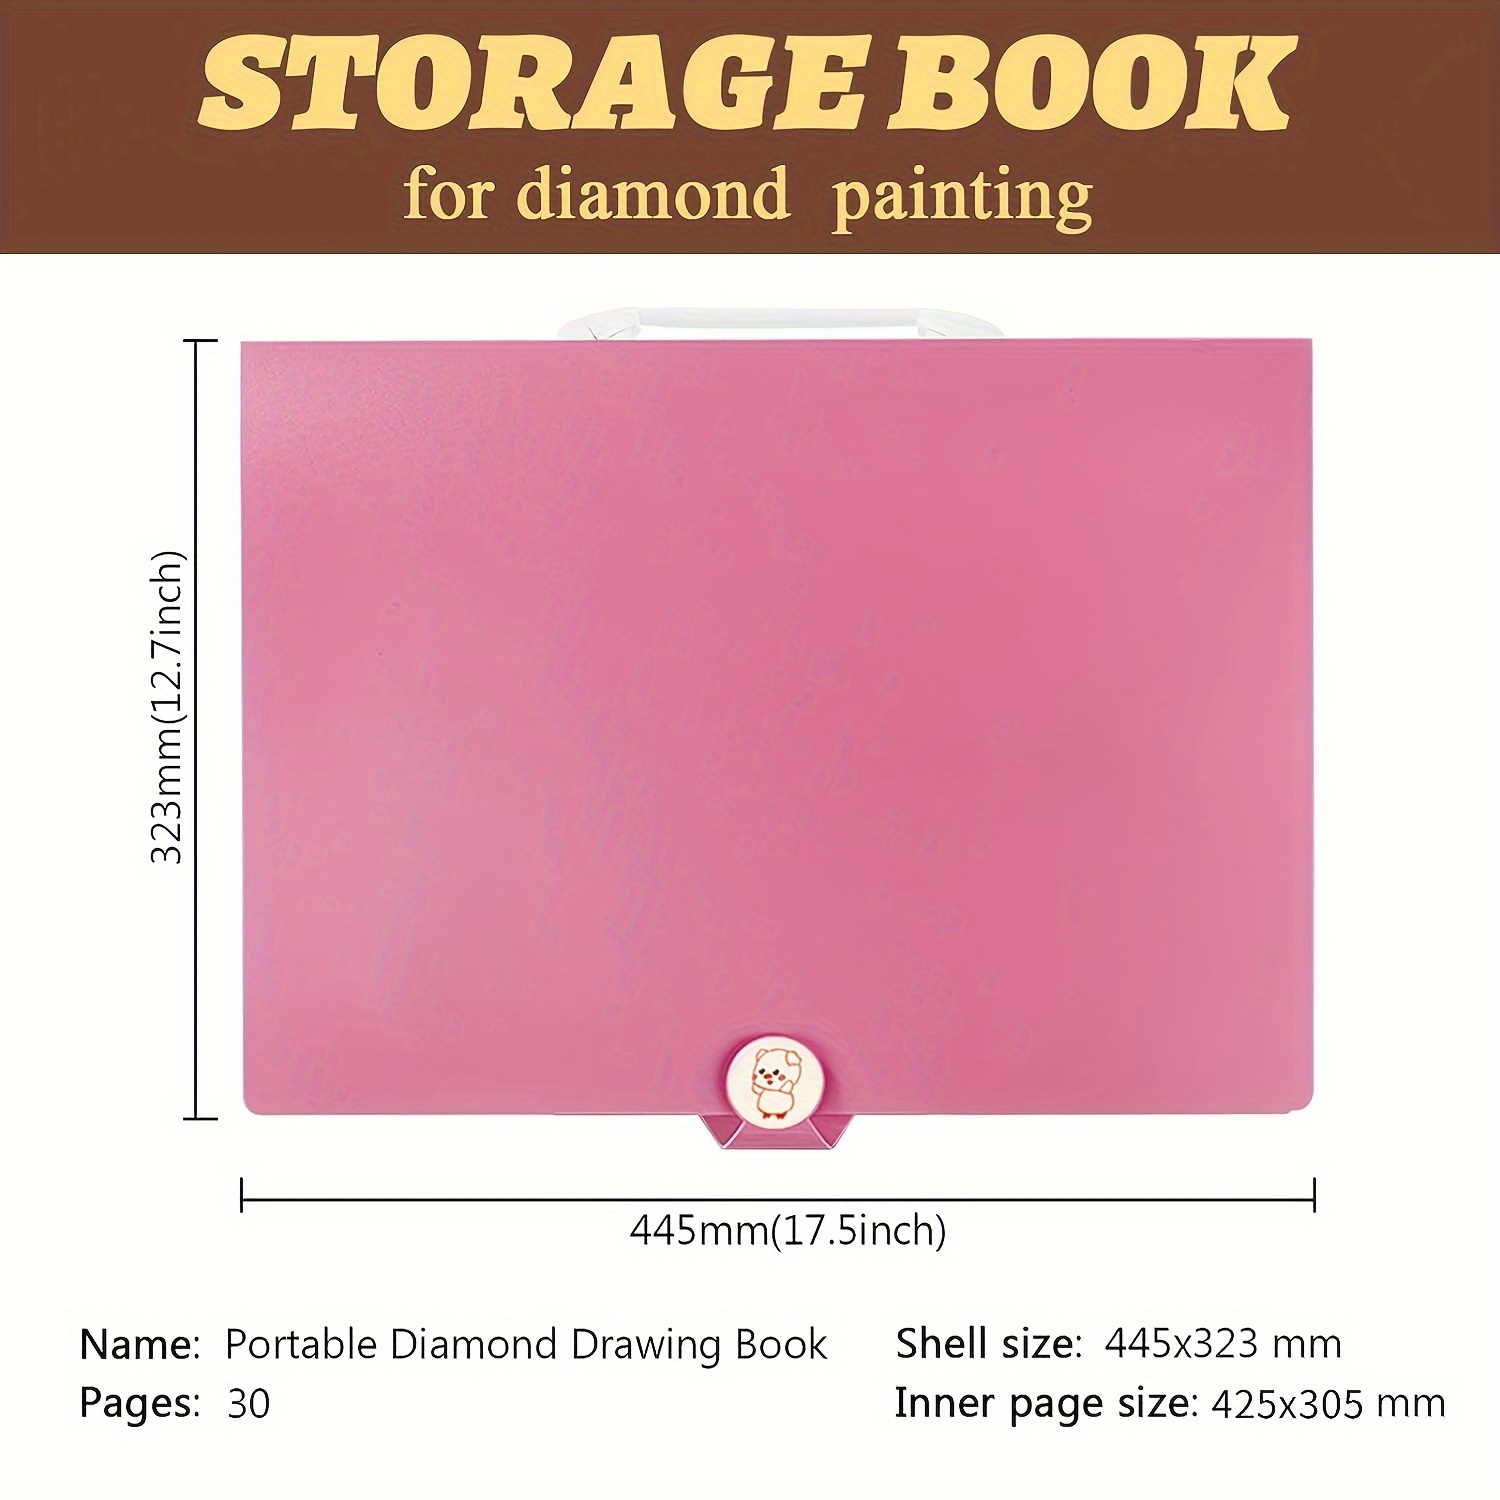  A2 30 Pages Diamond Painting Storage Book,Diamond